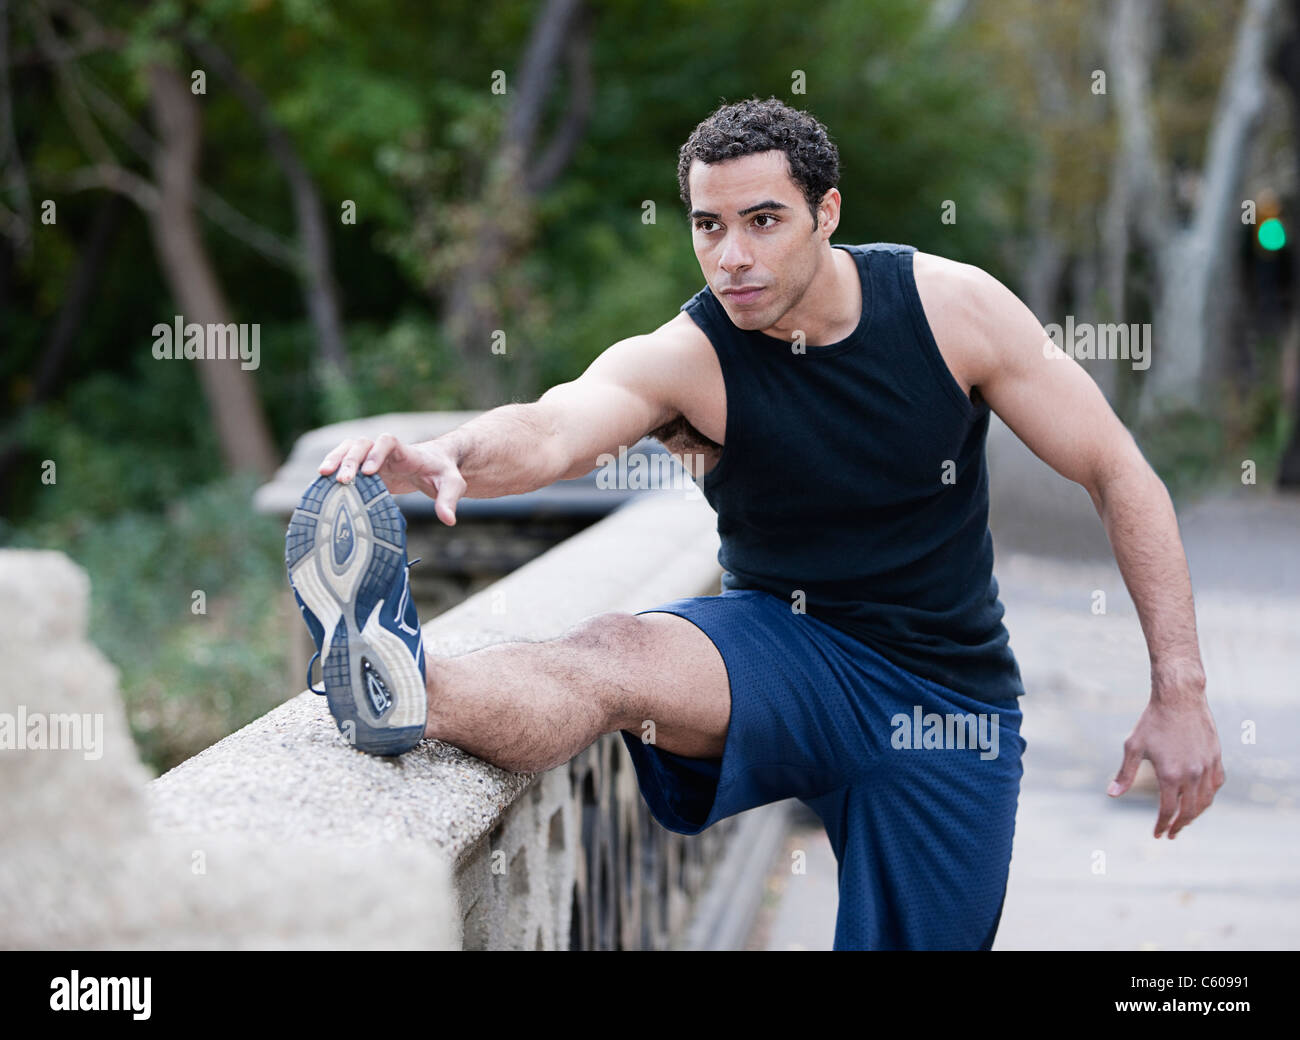 USA, New York, New York City, junger Mann, die Beine im park Stockfoto